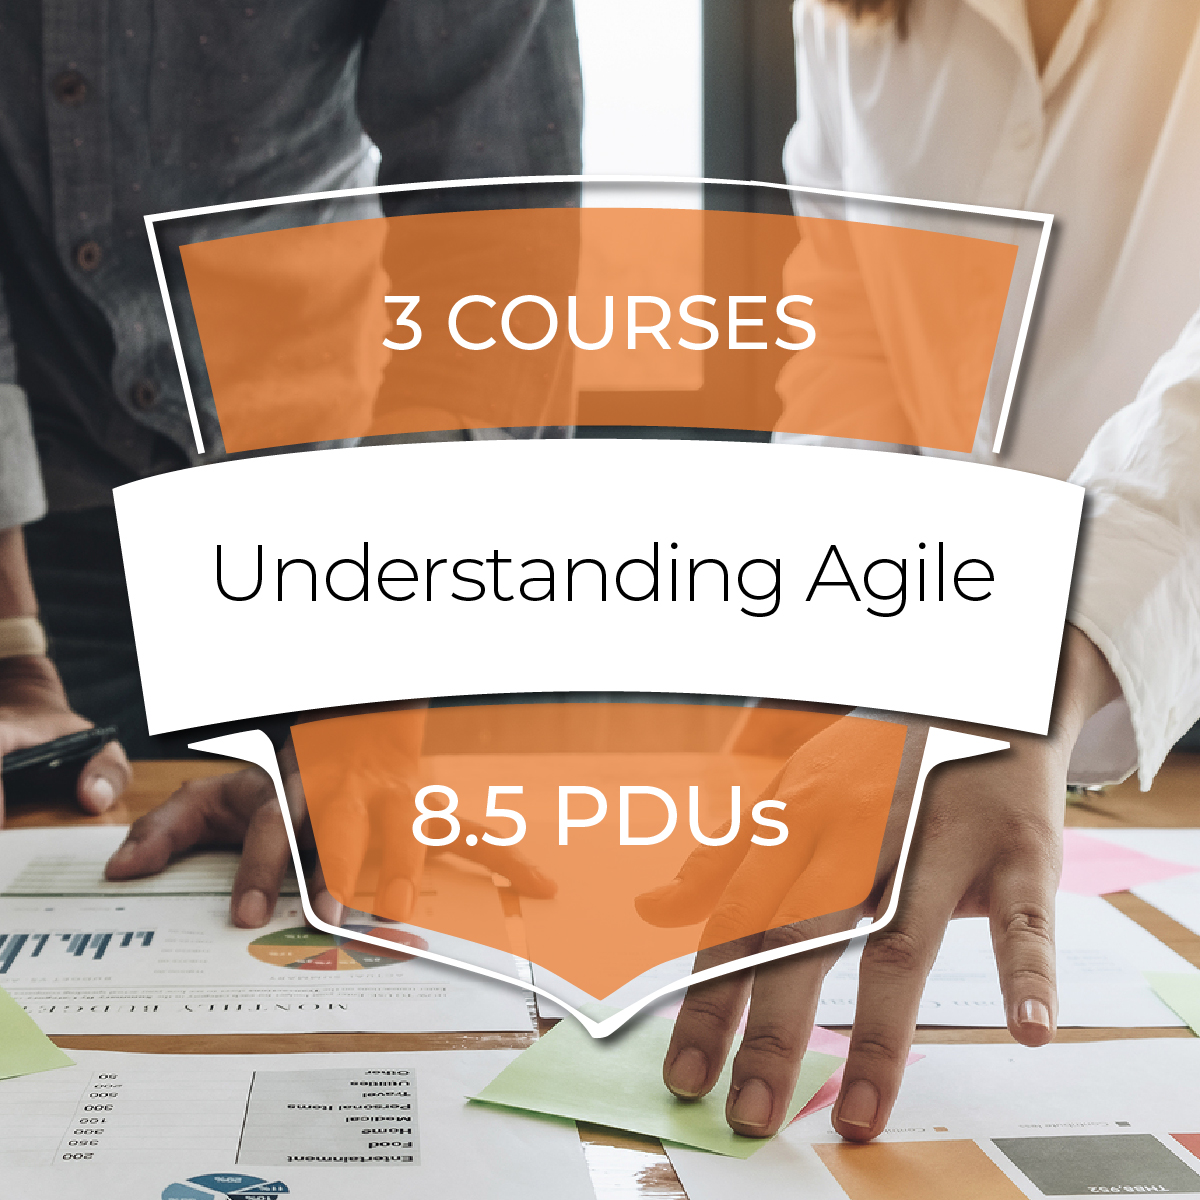 Understanding Agile - A 3 Course Bundle